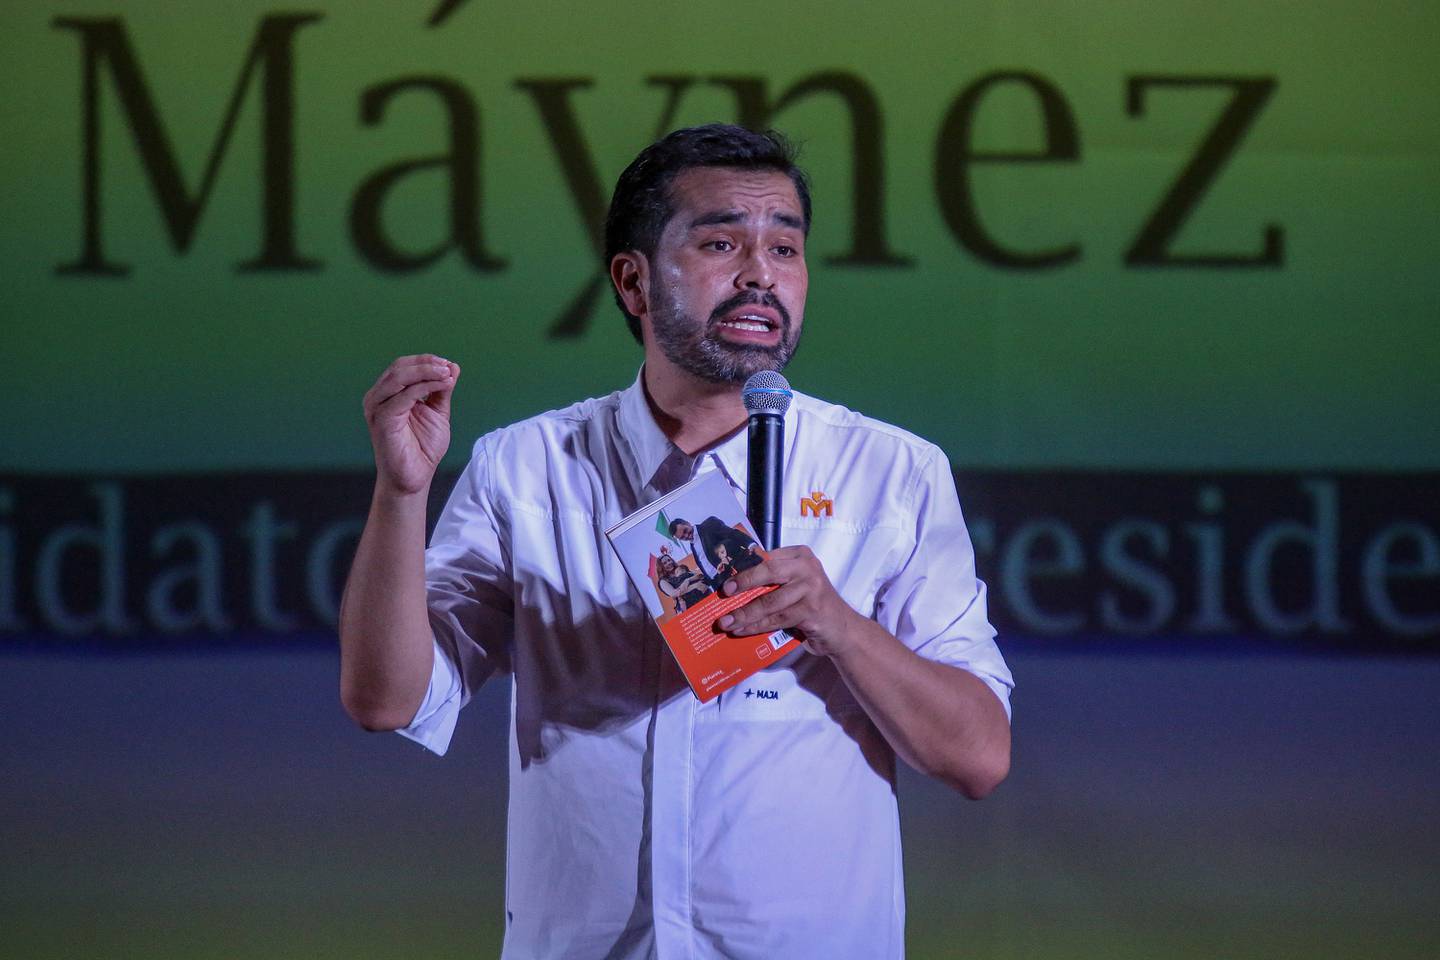 El candidato presidencial del opositor Movimiento Ciudadano (MC) Jorge Álvarez Máynez, participa en un conversatorio universitario en ciudad de Mérida, Yucatán (México). EFE/Lorenzo Hernández